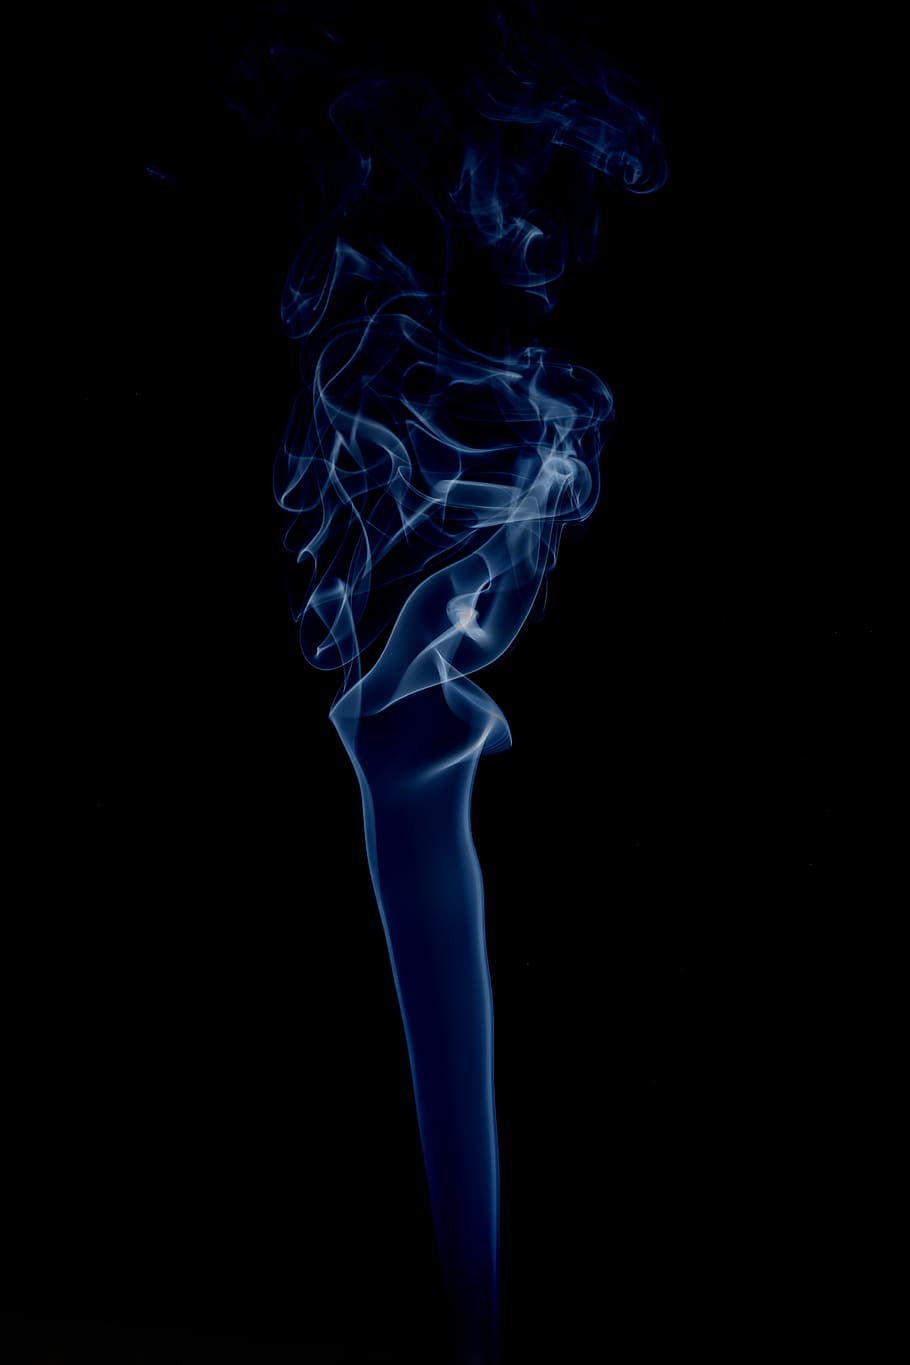 humo, fuego, ardor, encendedor, llama, incienso, humo - estructura física, foto de estudio, fondo negro, interior